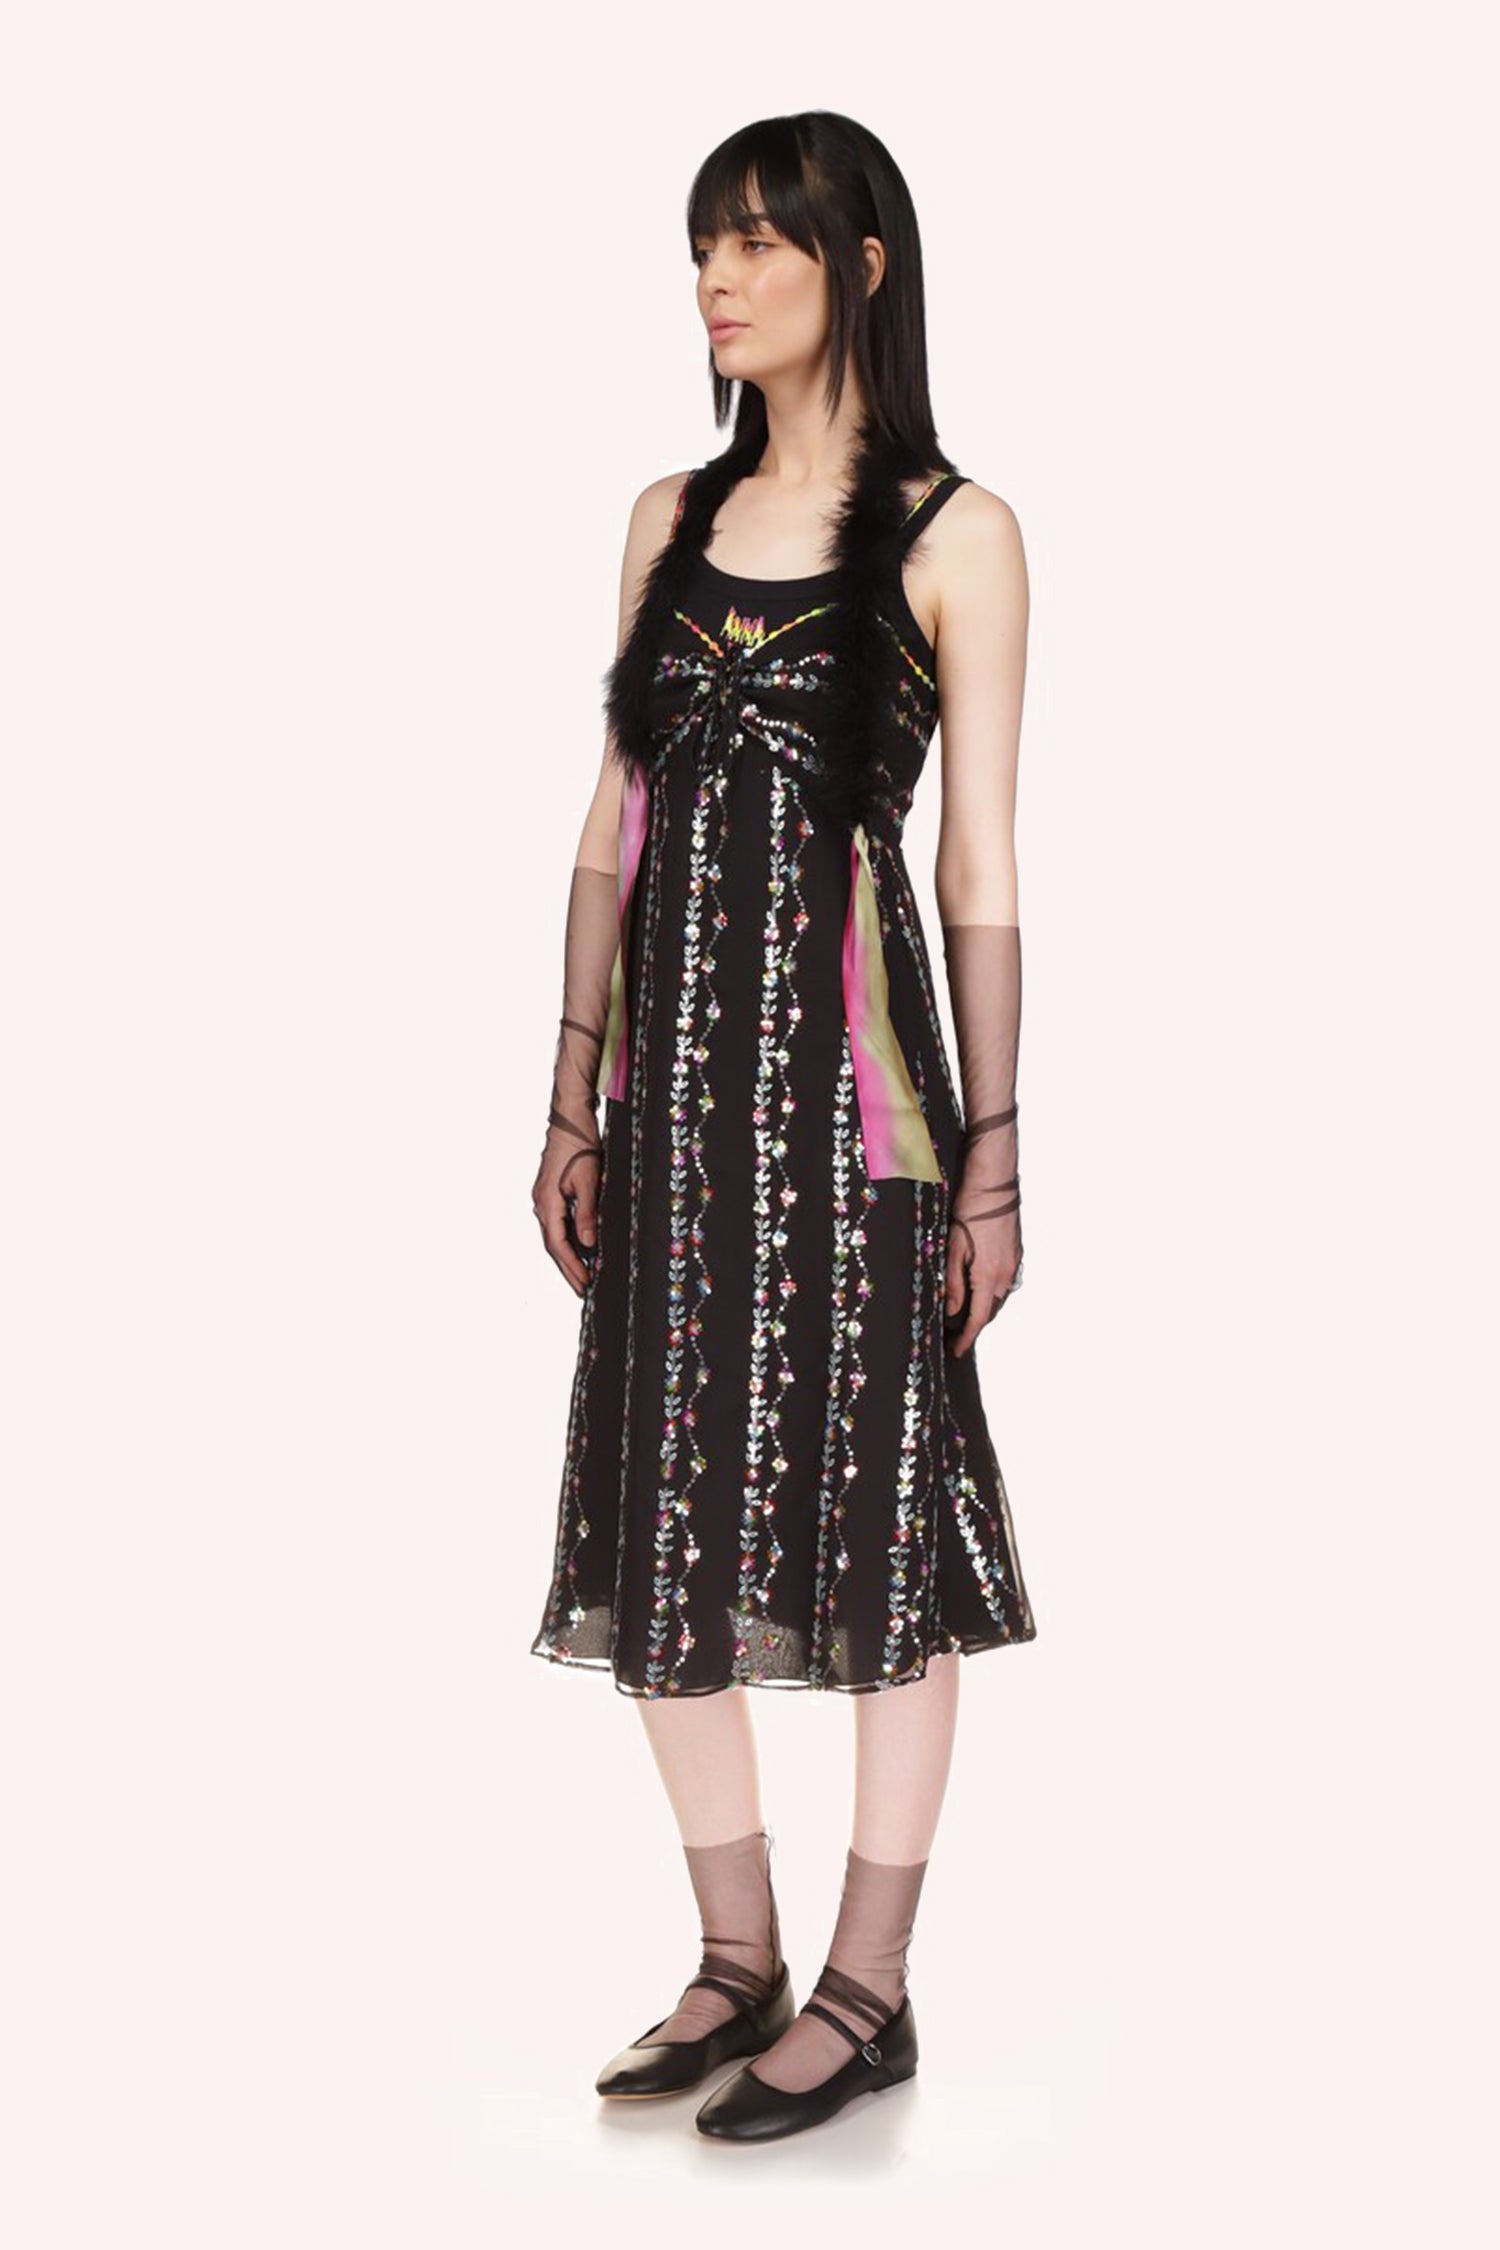 Marabou Boas Black est un foulard en fausse fourrure qui complète parfaitement les robes Anna Sui.